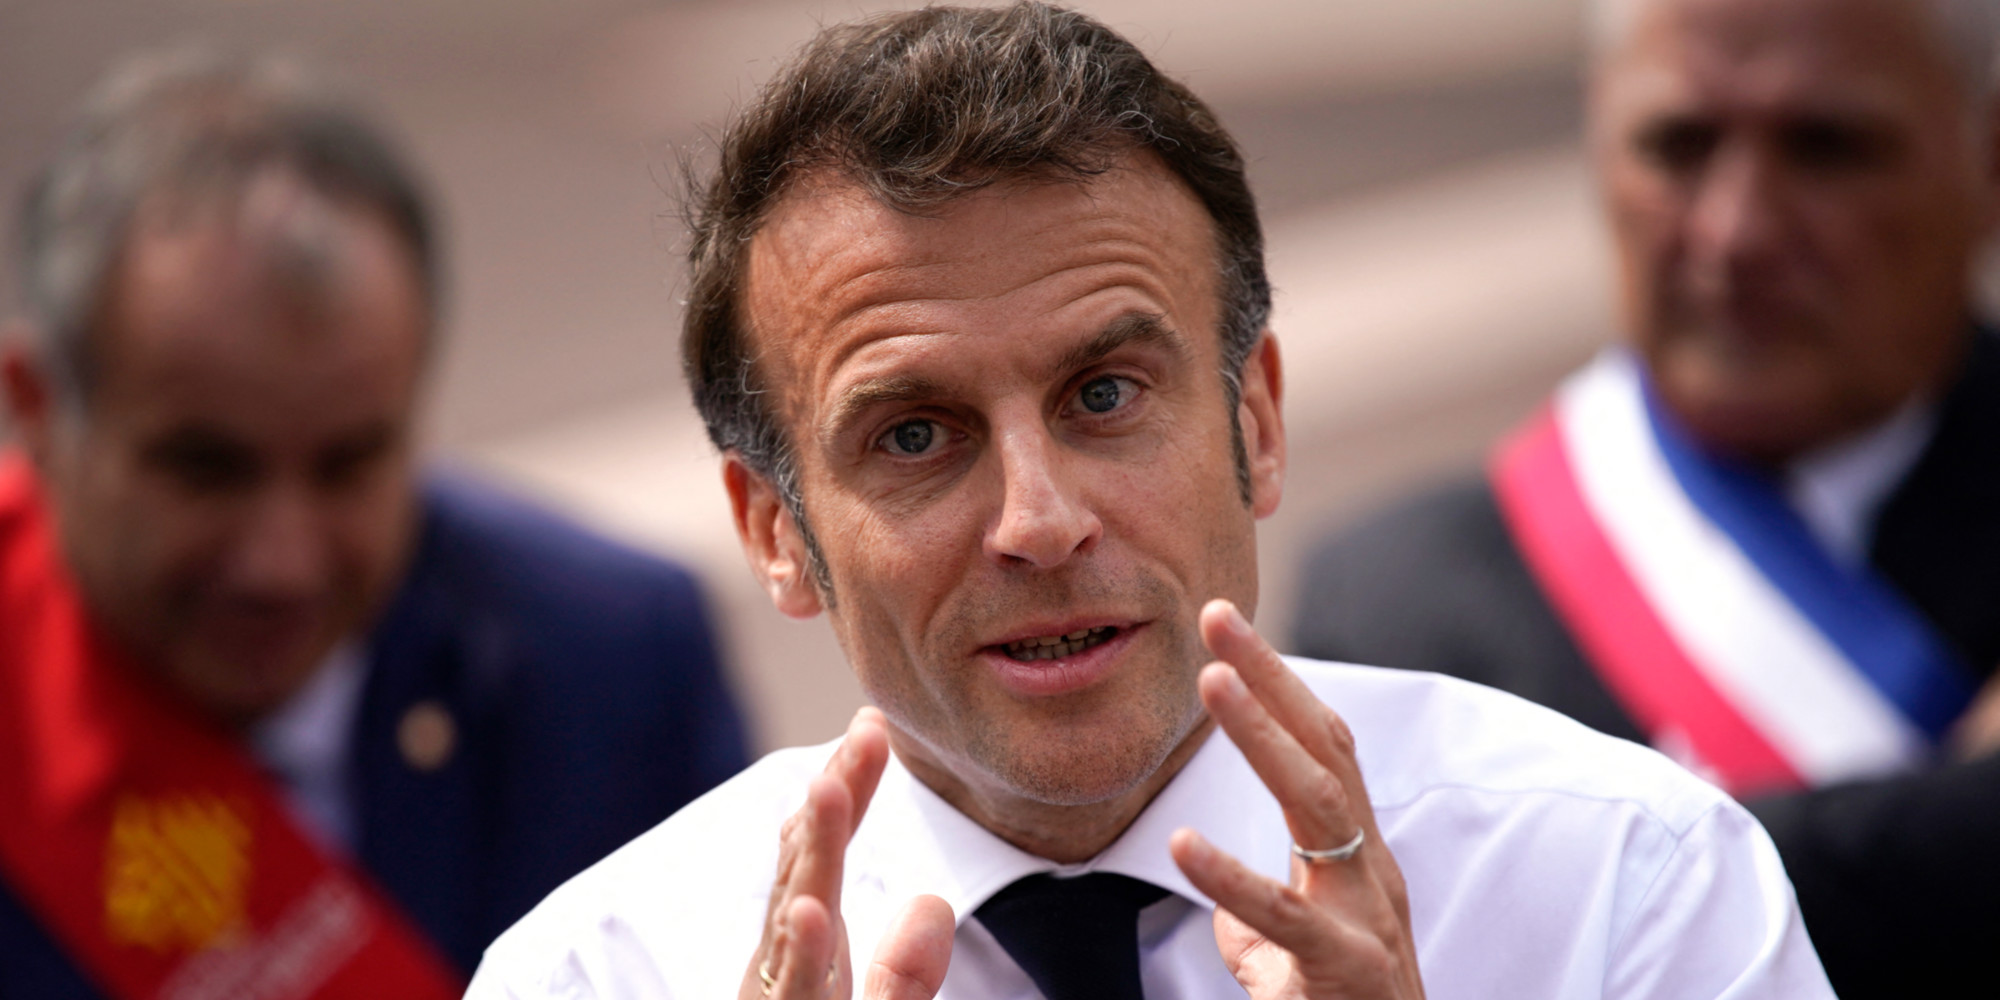 «ça va être dur jusqu'à la fin de l'été» pour les produits alimentaires, prévient Macron